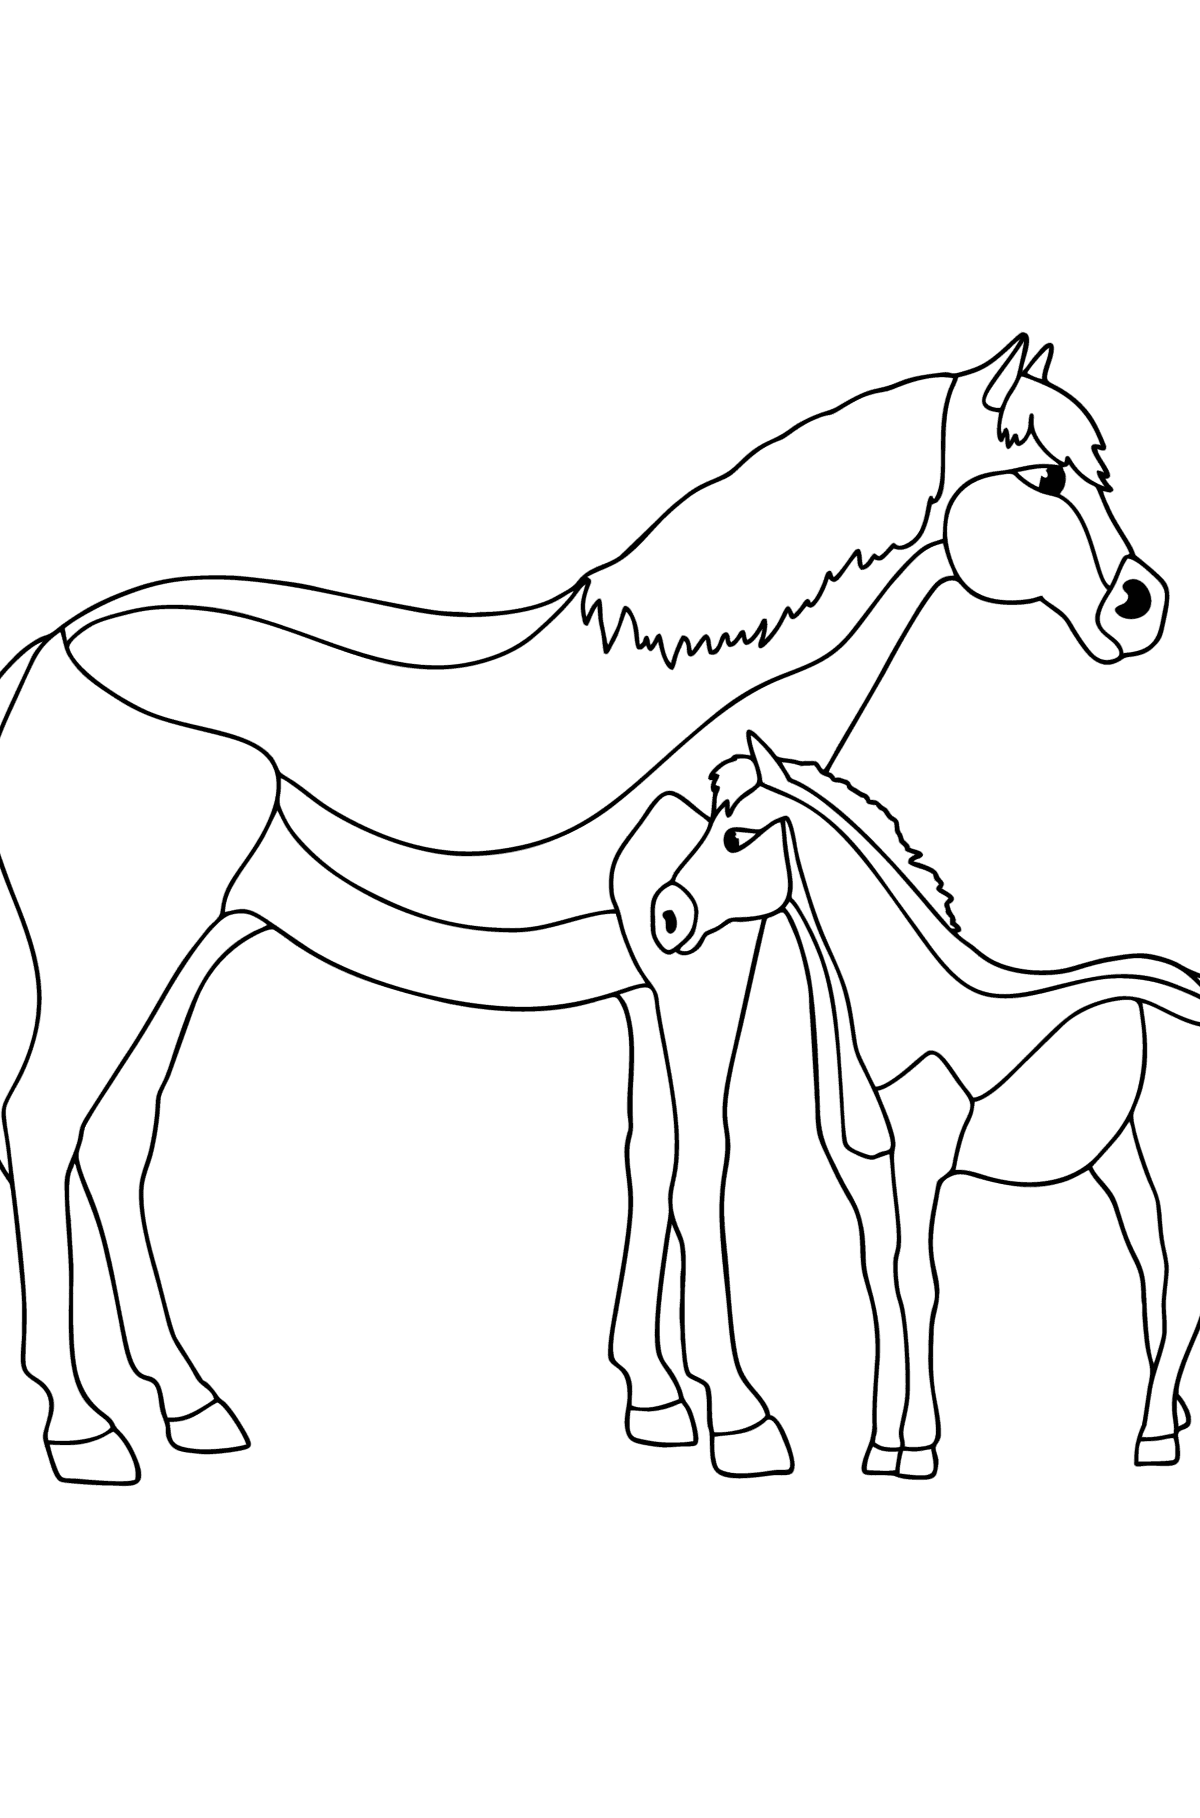 Värityskuva Hevonen ja varsa - Värityskuvat lapsille